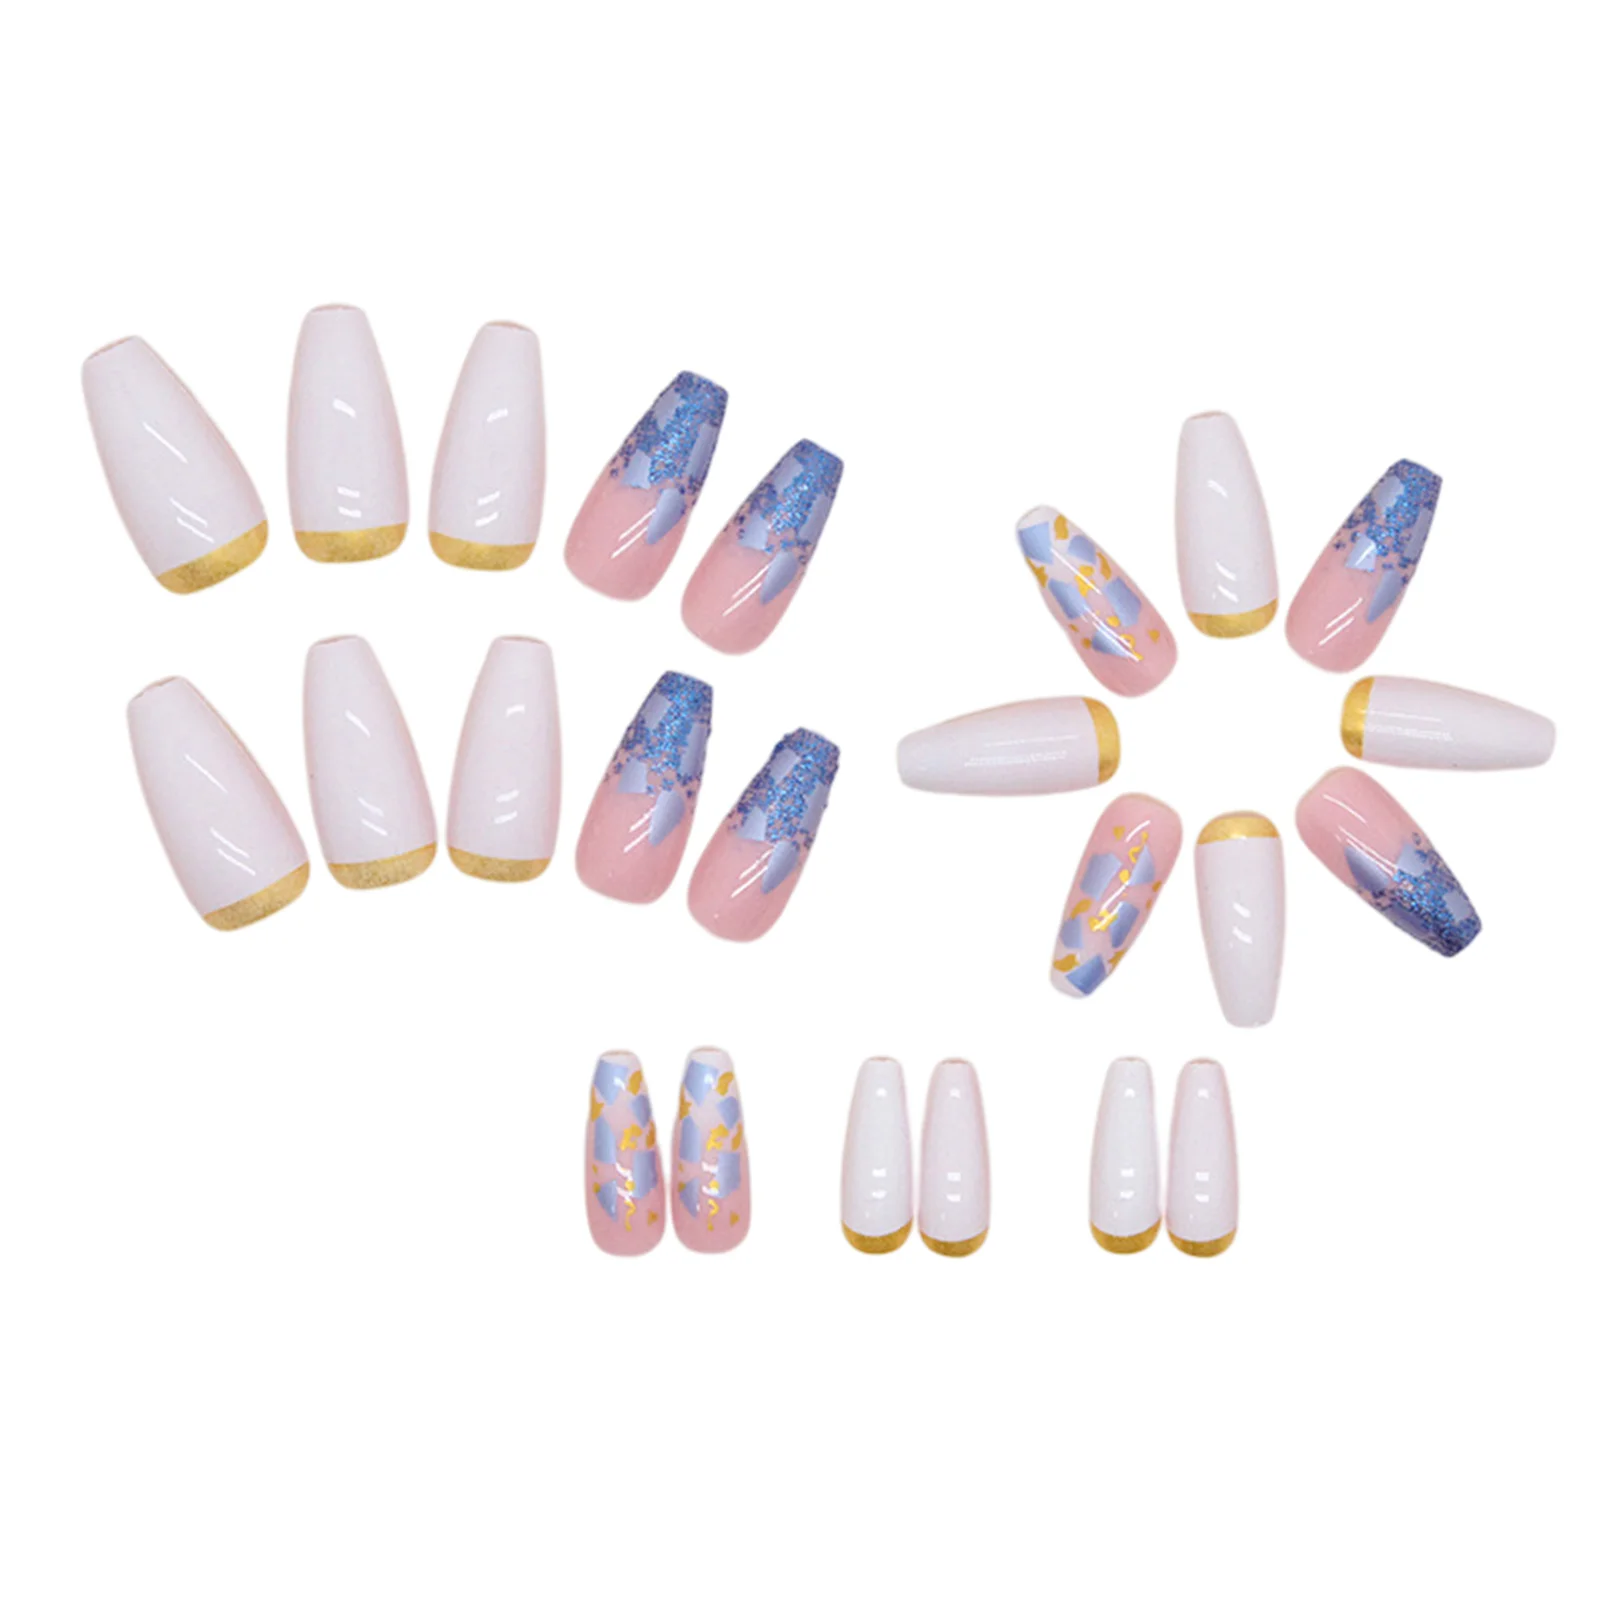 Французский накладной ноготь средней длины телесного цвета, полностью покрывающий квадратные искусственные типсы для ногтей для покупок и свиданий